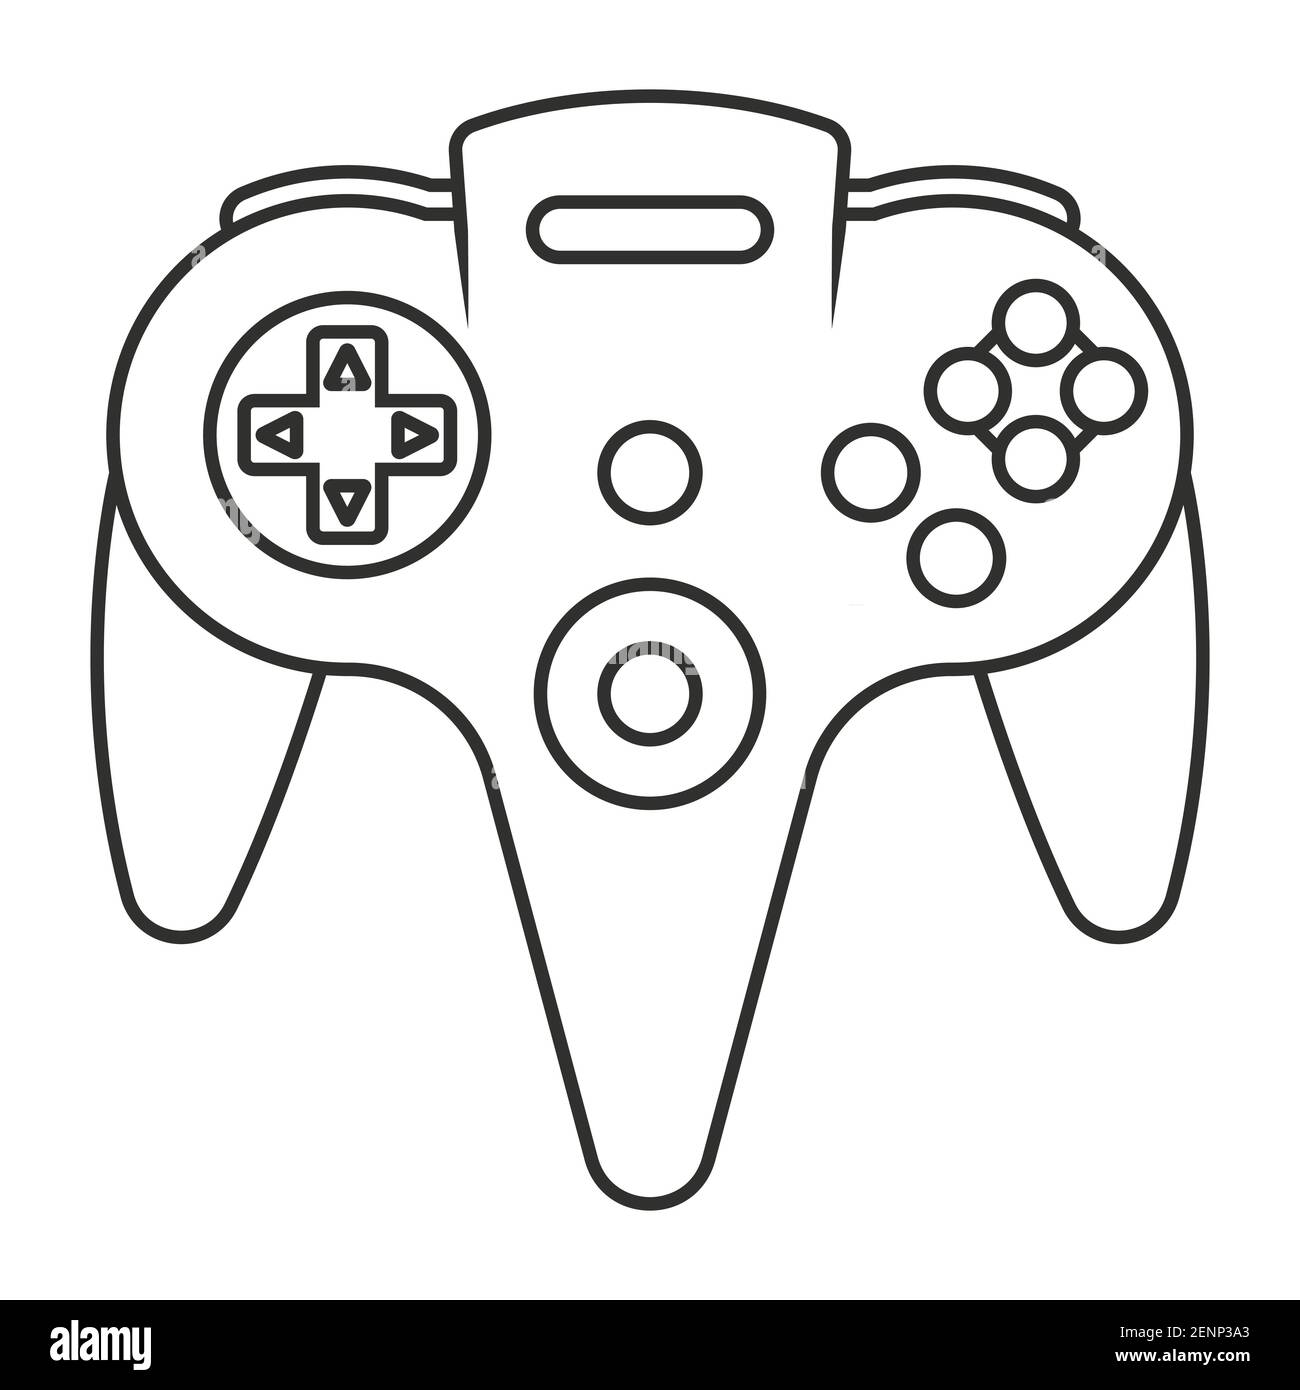 N64 oder gamecube Video Game Controller Line Art Symbol für Apps oder Website Stock Vektor